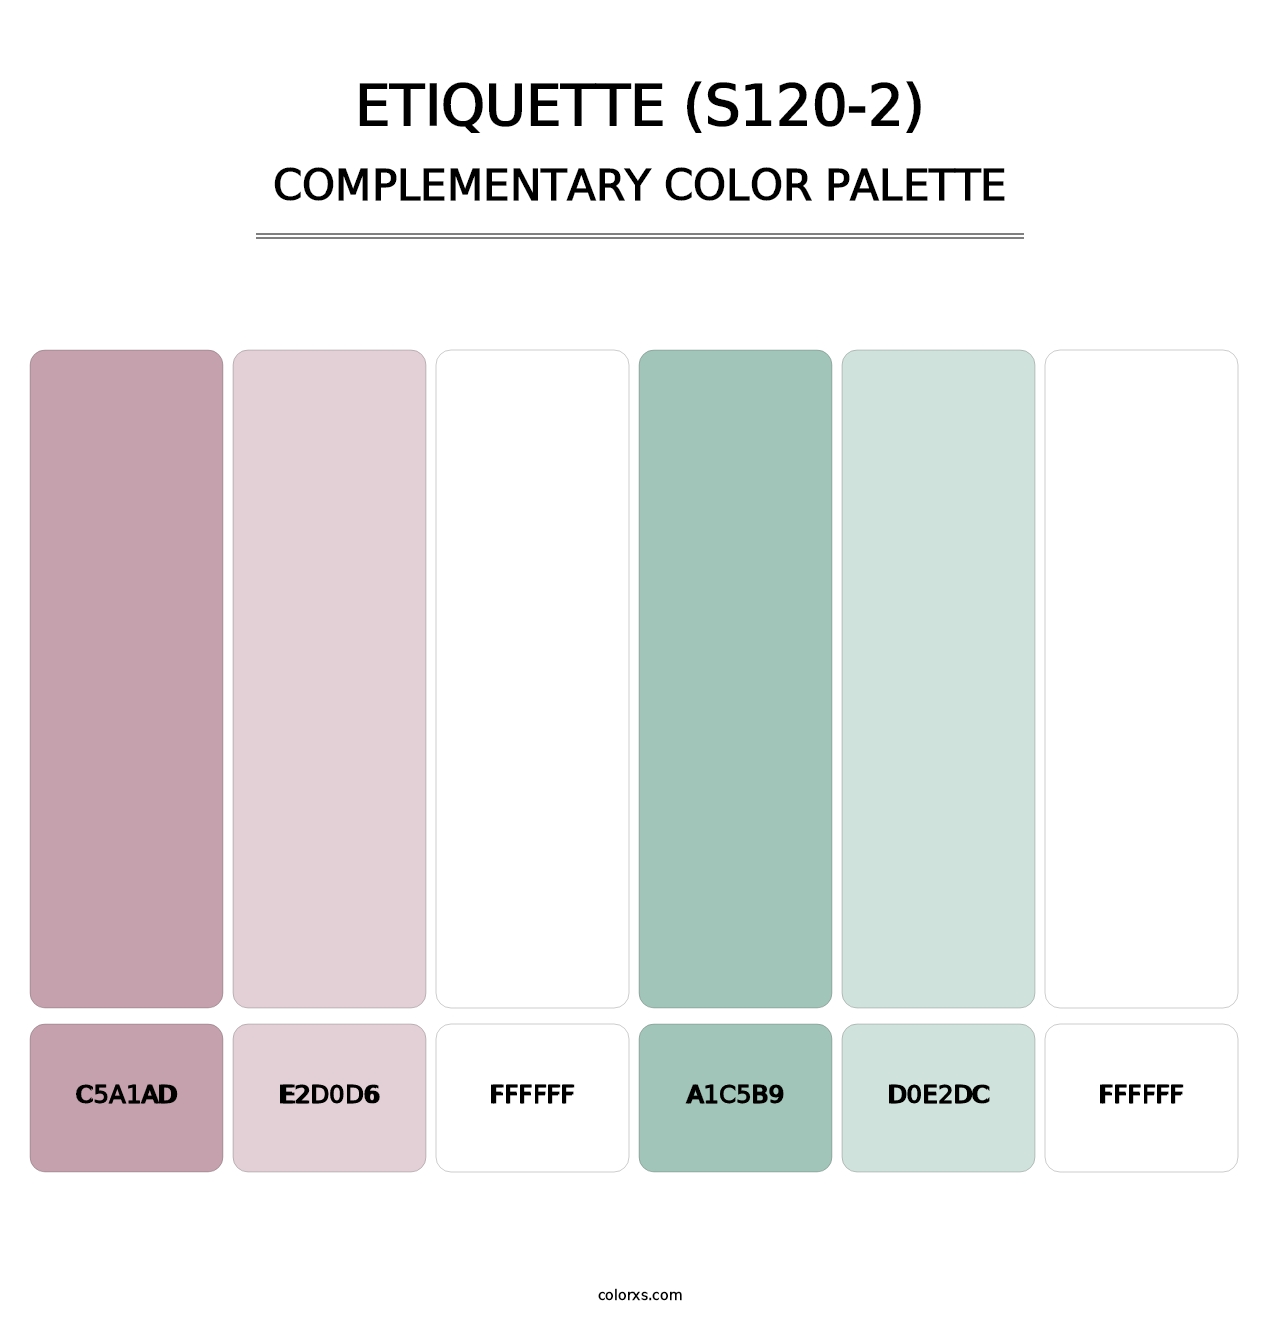 Etiquette (S120-2) - Complementary Color Palette